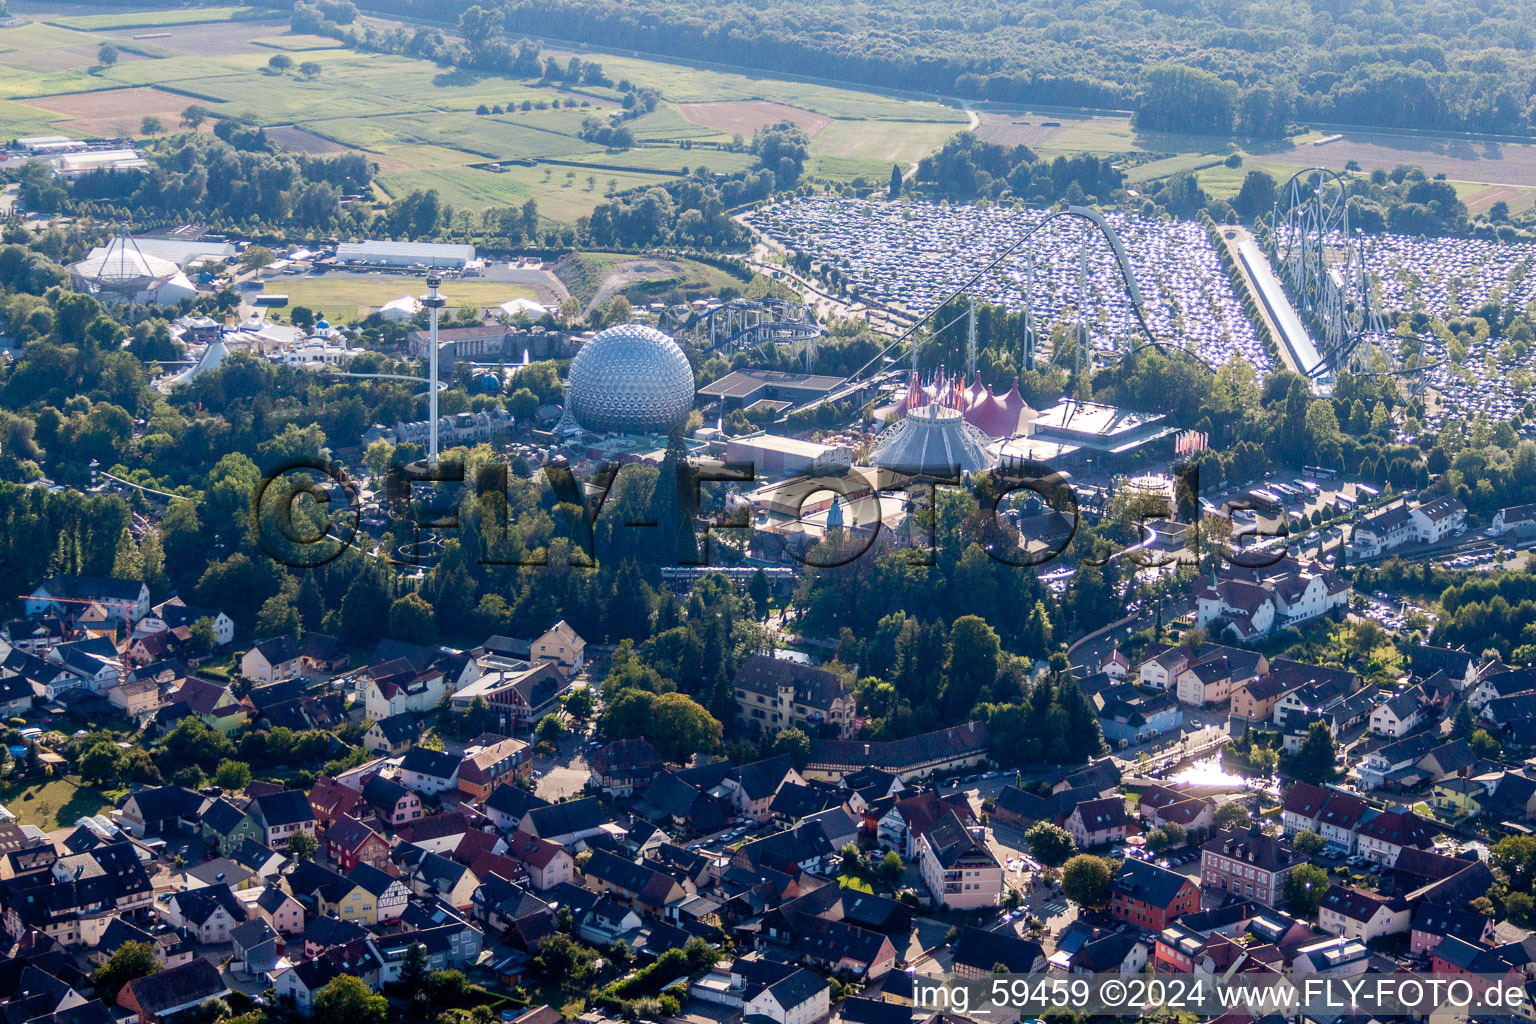 Vue aérienne de Base de loisirs - Parc d'attractions Europa-Park à Rust dans le département Bade-Wurtemberg, Allemagne